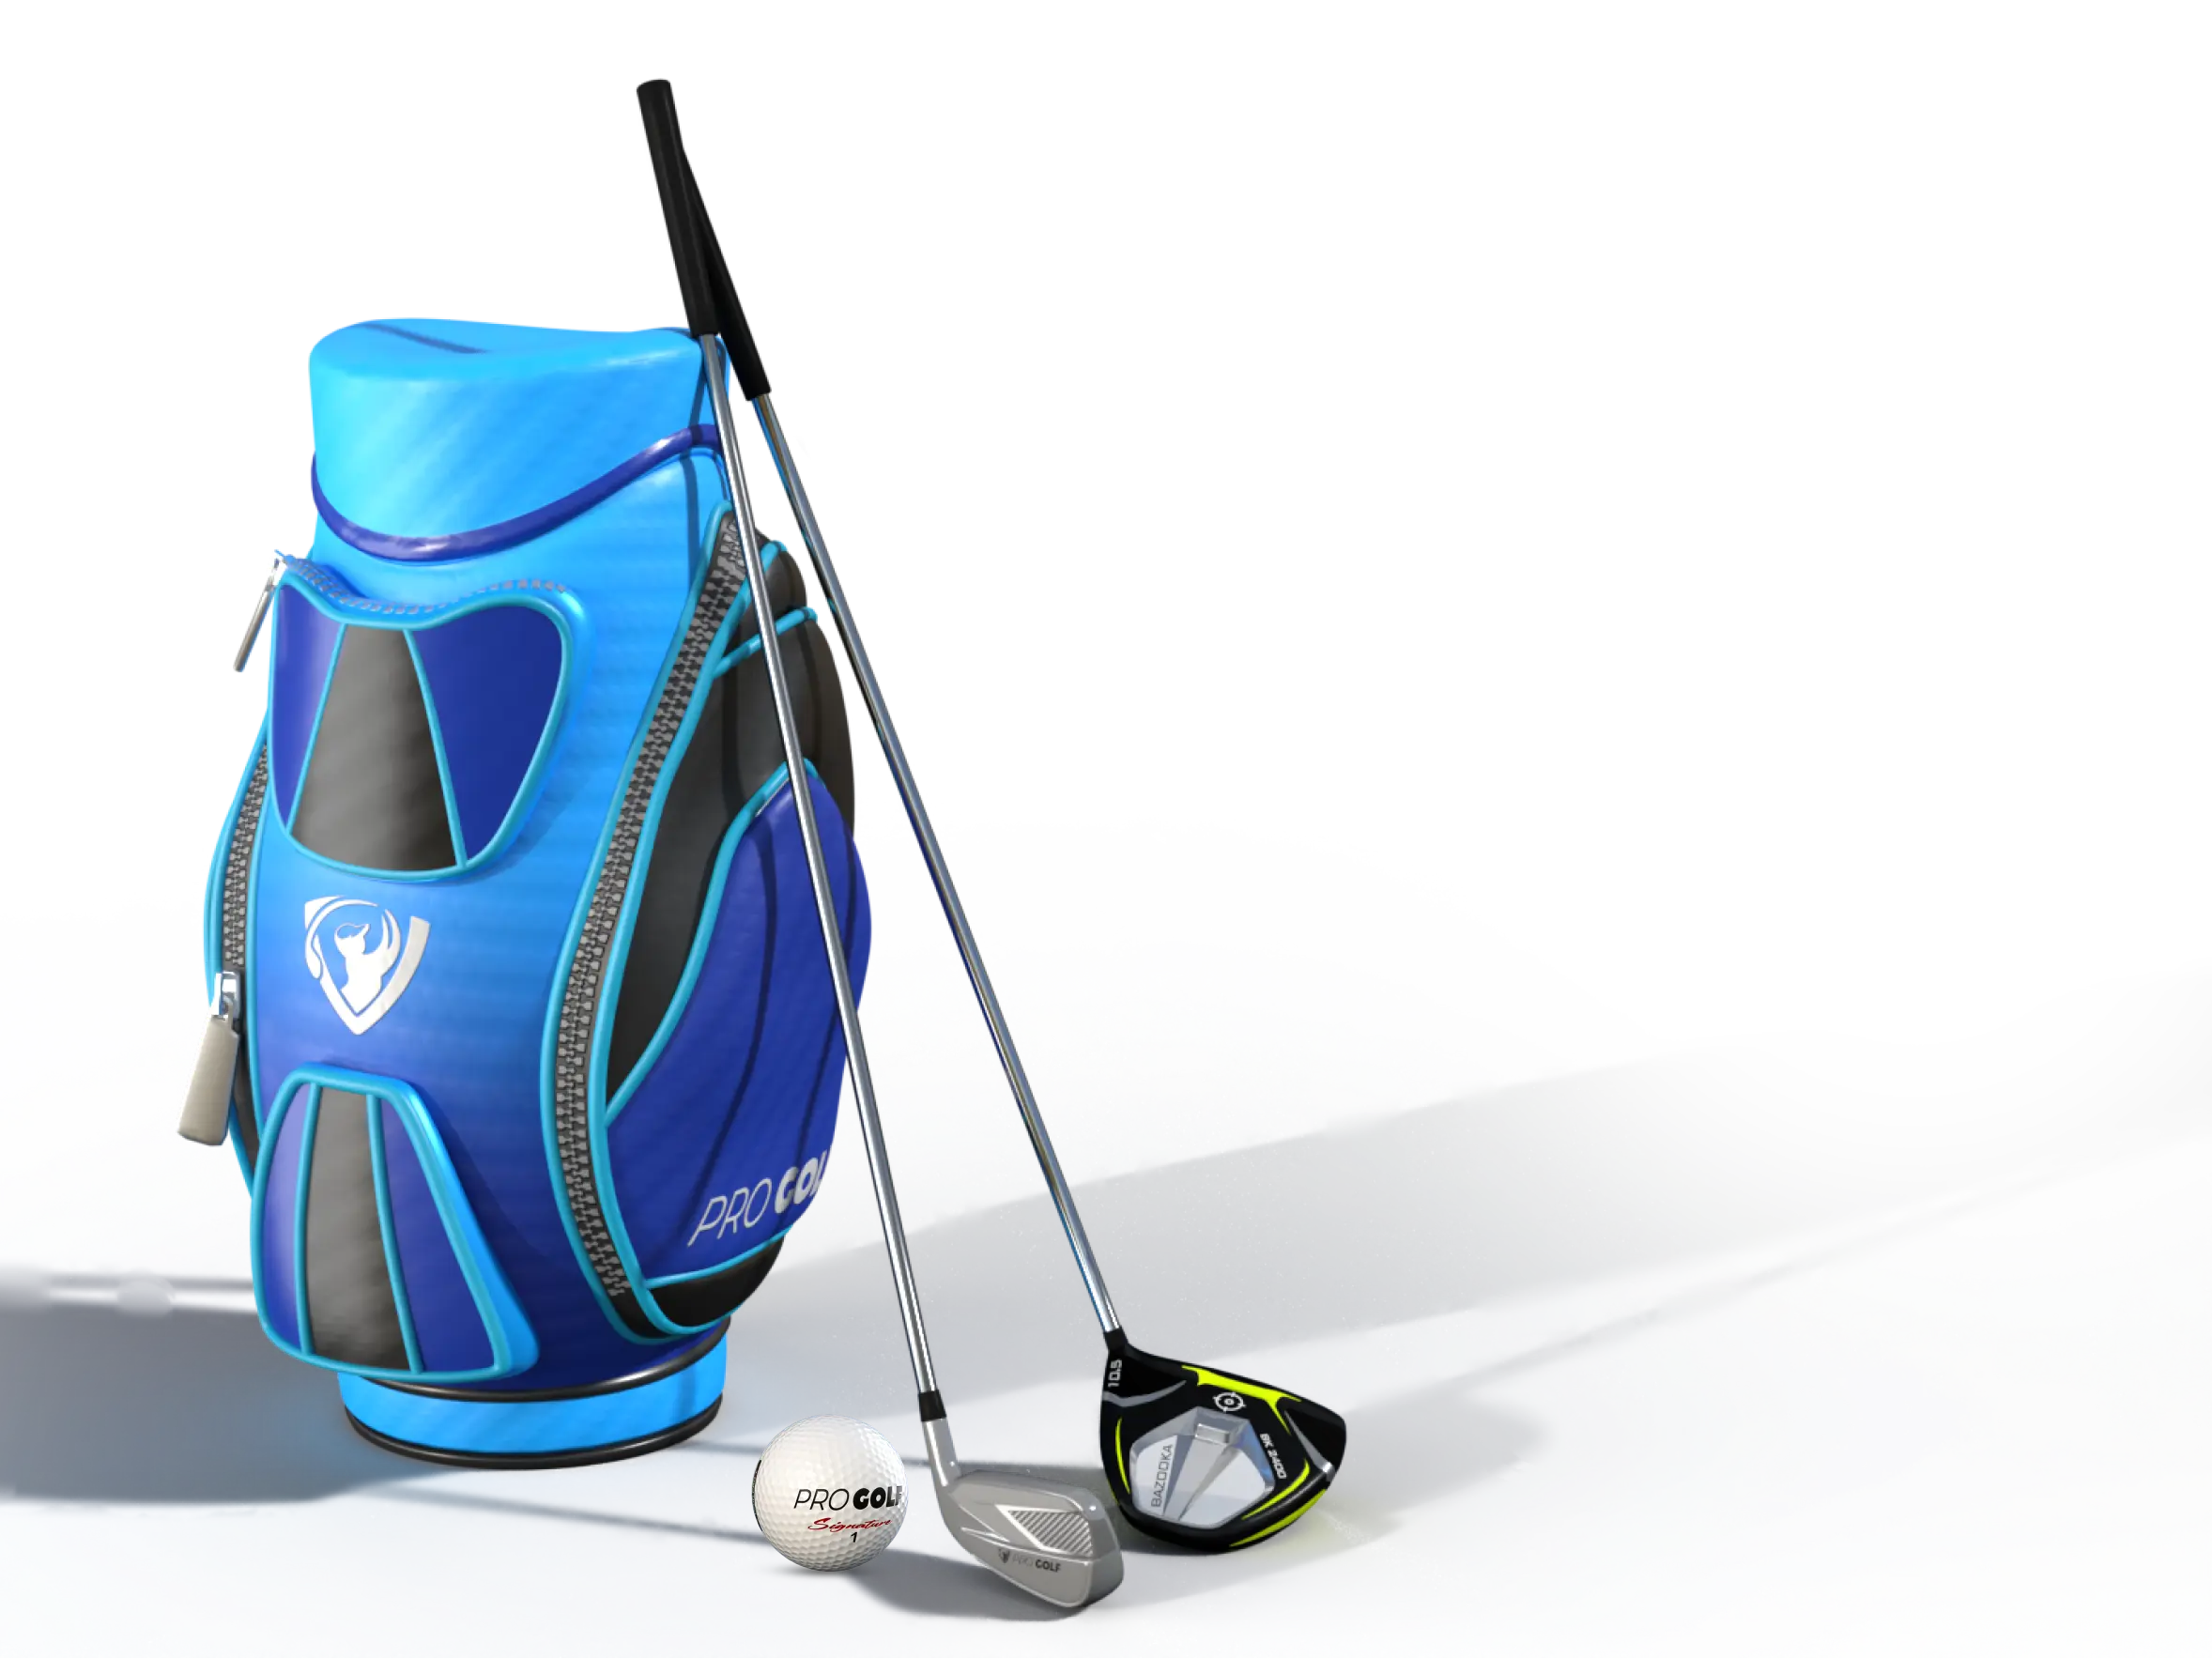 golf bag, clubs and ball